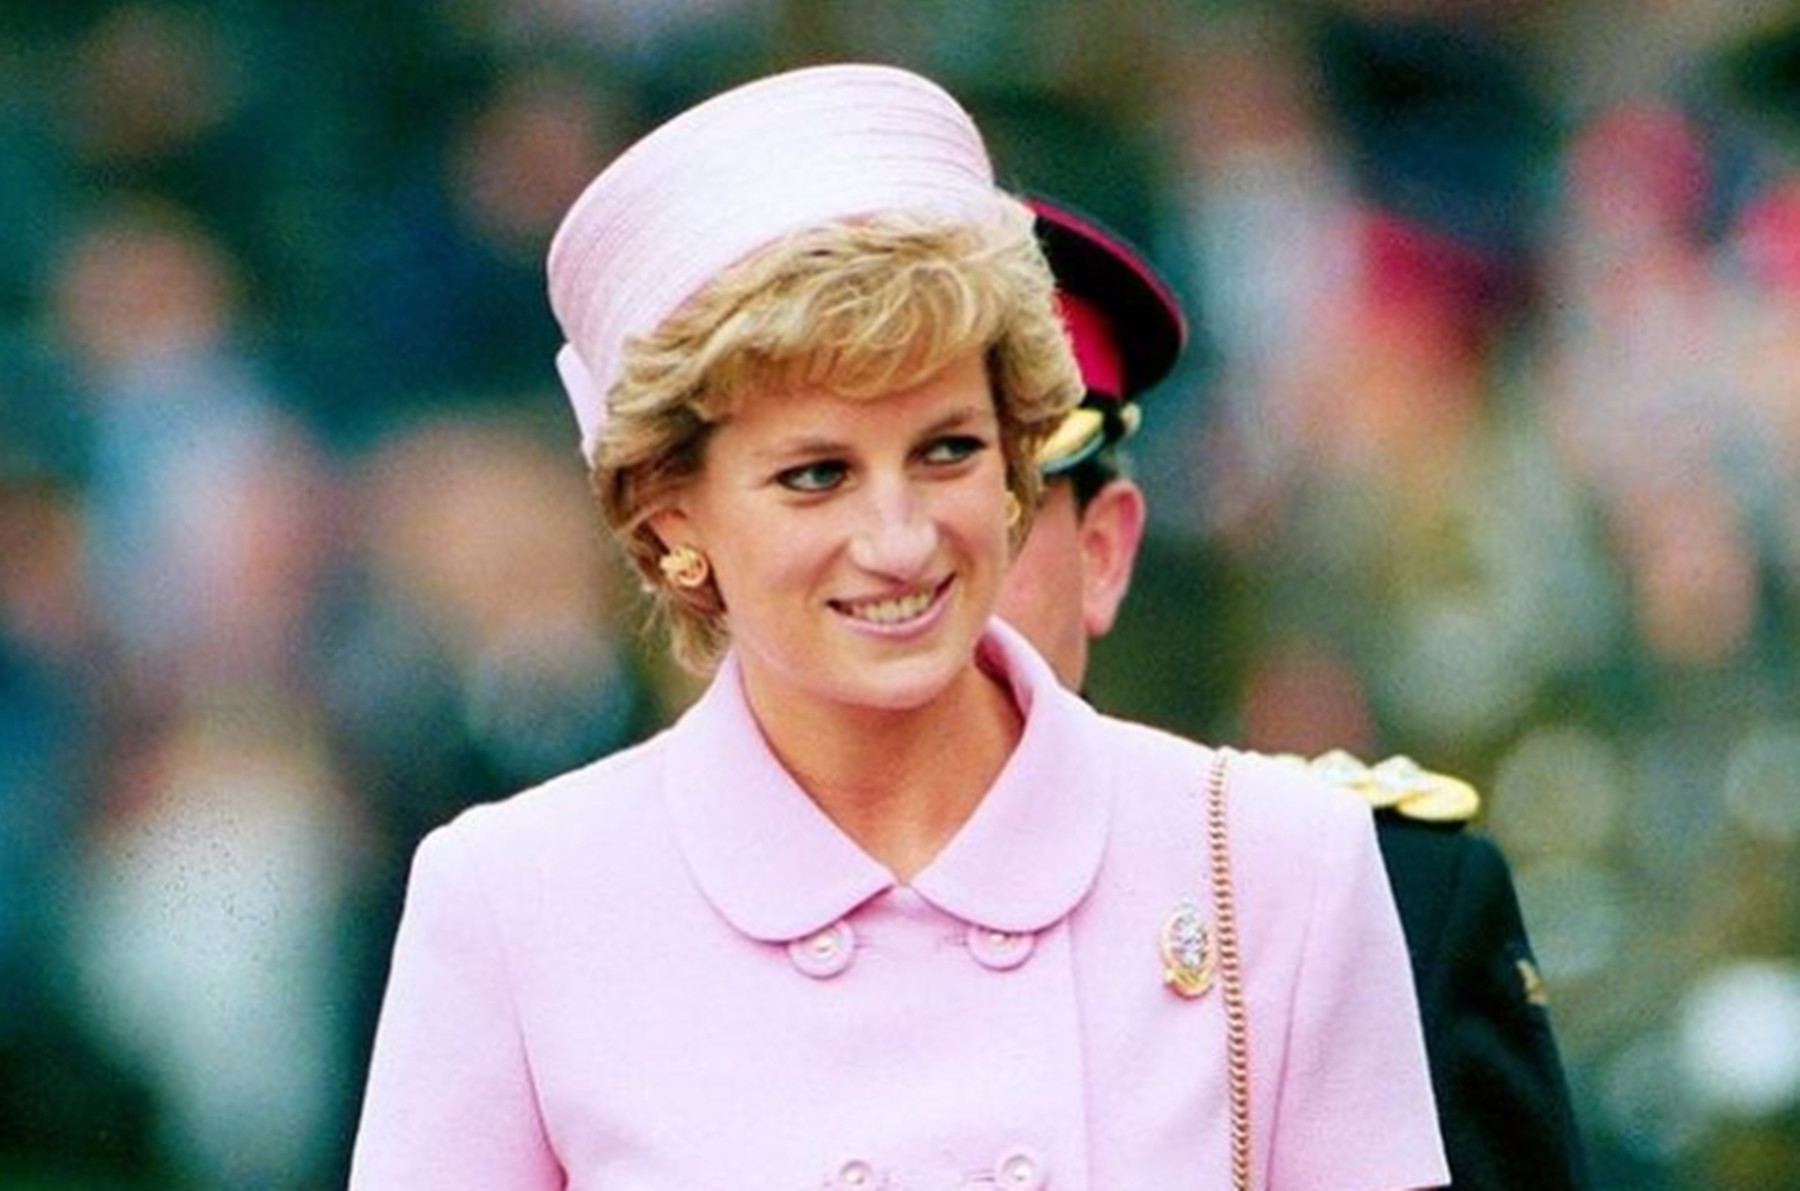 Συνέντευξη πριγκίπισσας Νταϊάνα – BBC: Τεράστια αποζημίωση για τη βασιλική οικογένεια